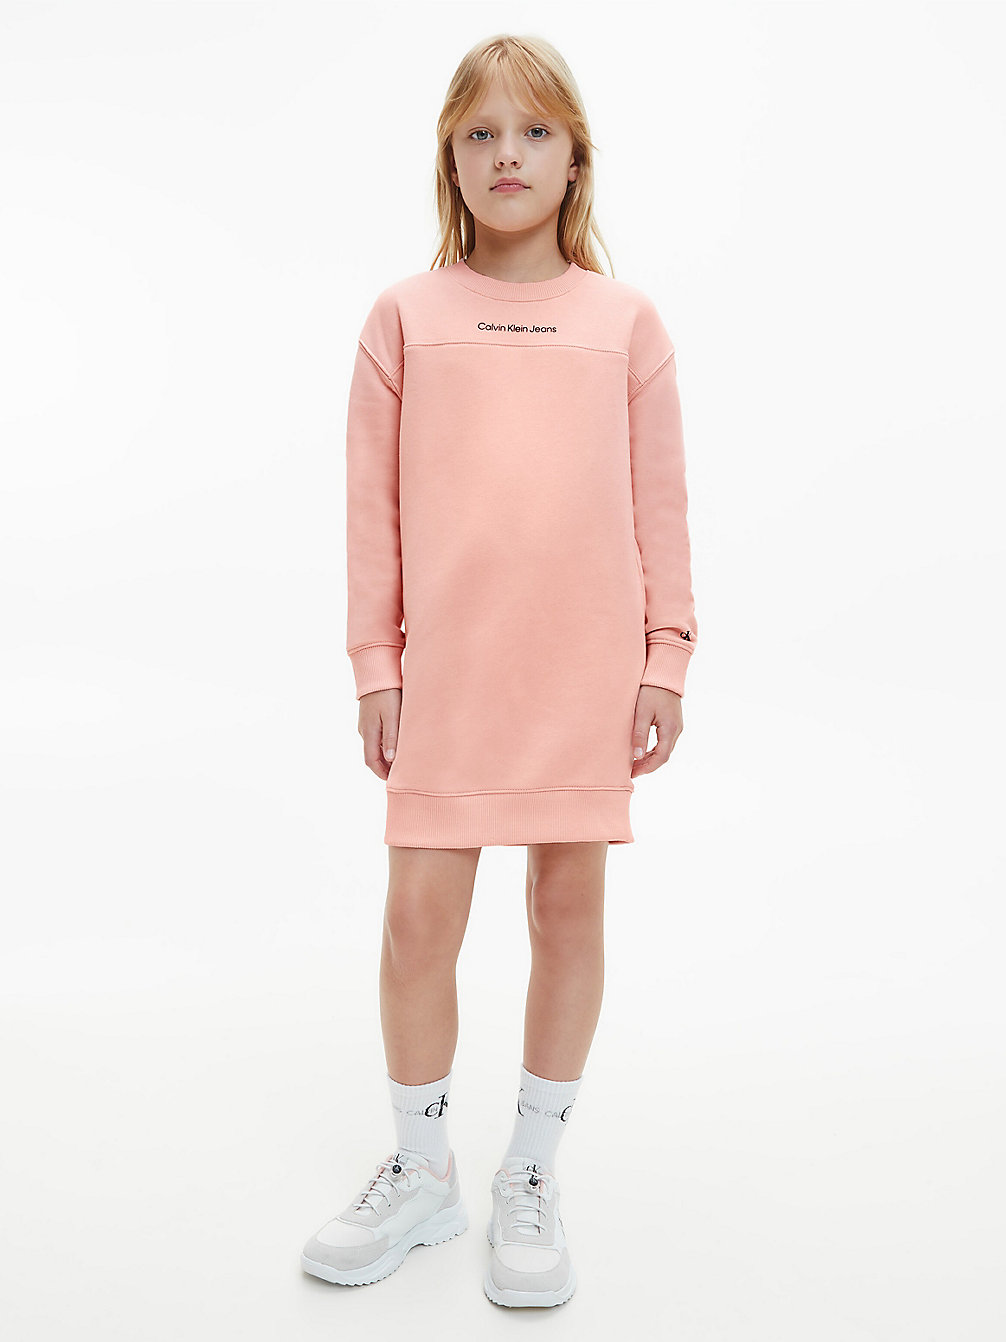 PINK BLUSH Sweatshirt Dress undefined girls Calvin Klein